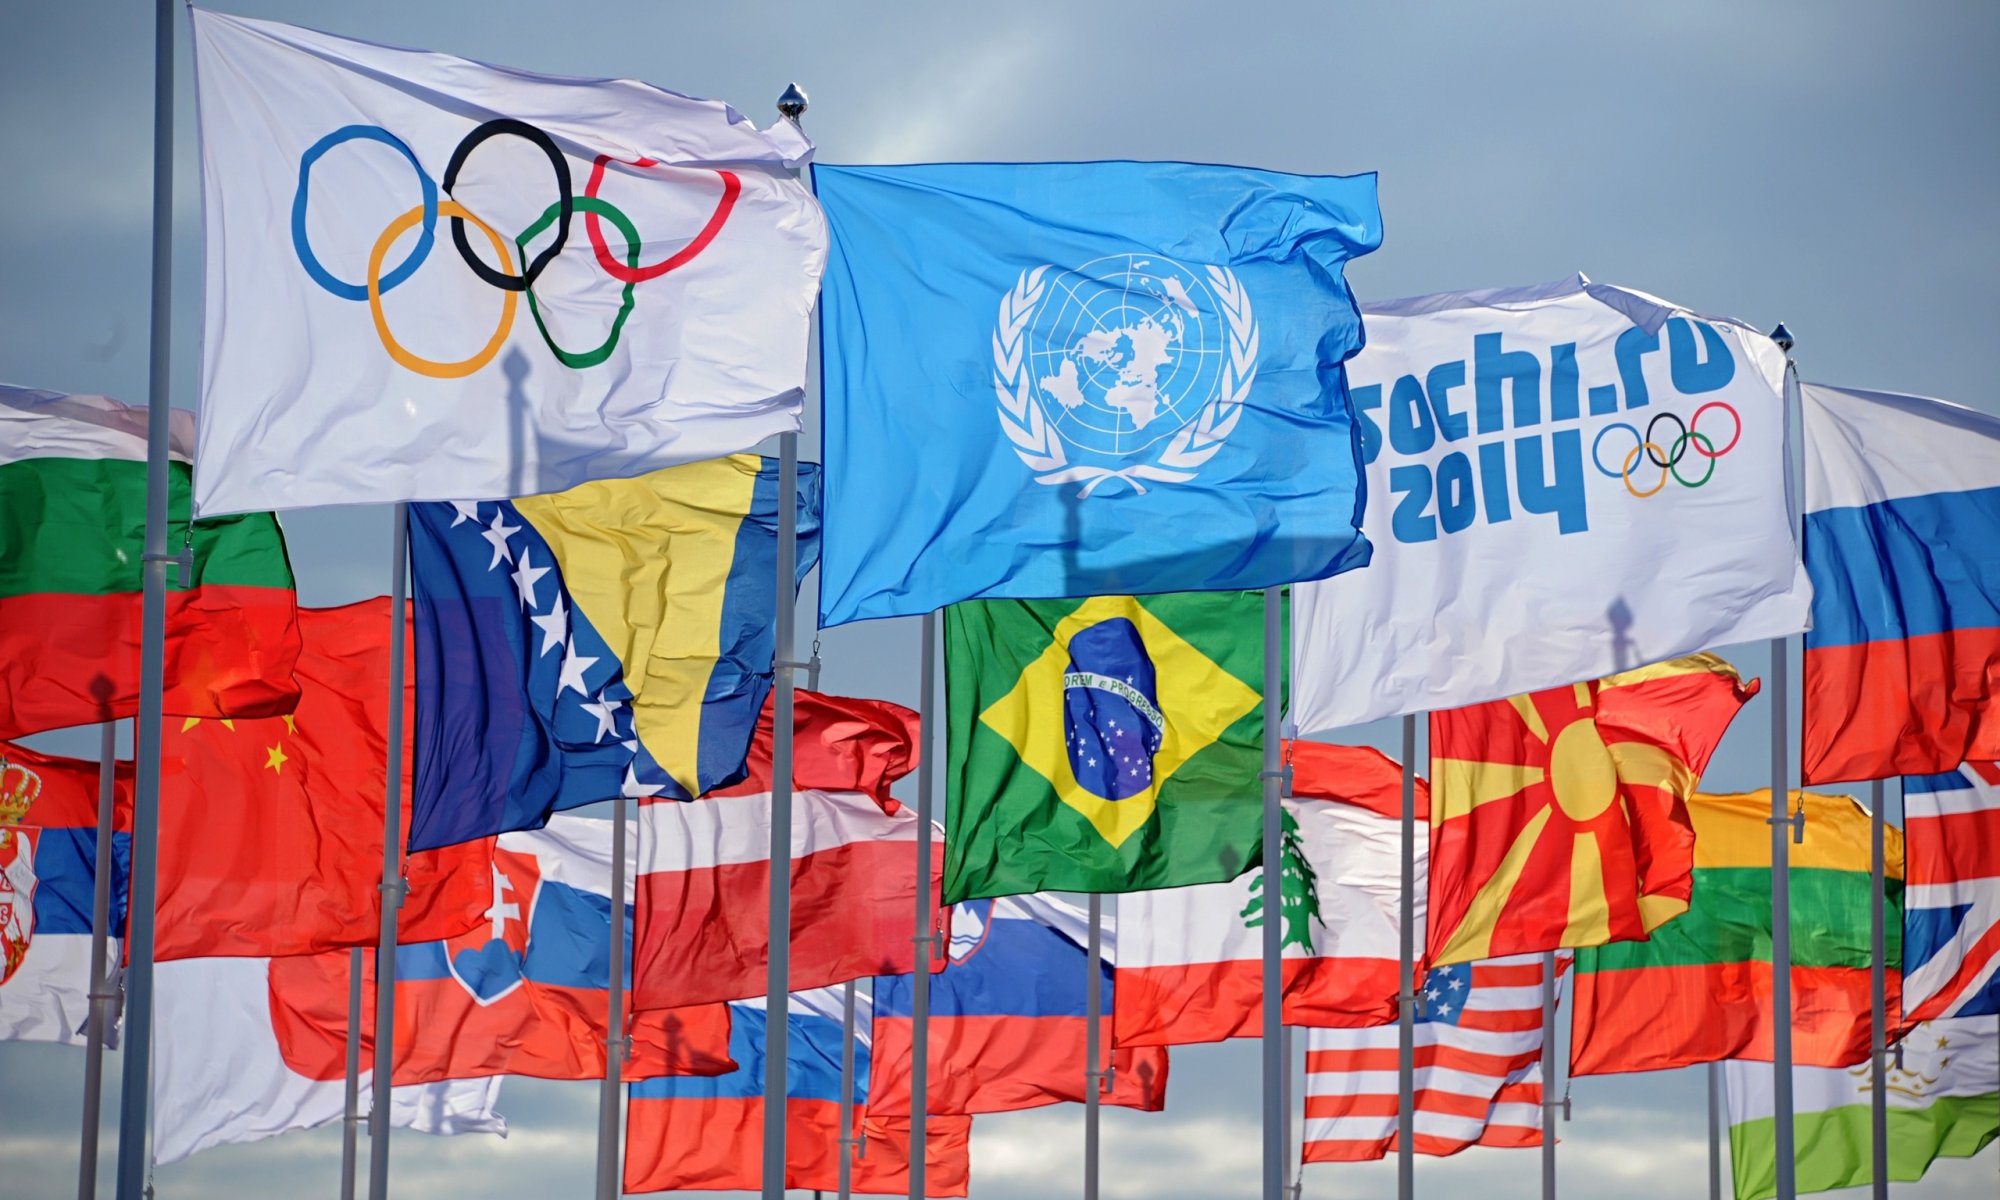 олимпиада сочи 2014 флаги сочи-2014 олимпийские игры страны участницы